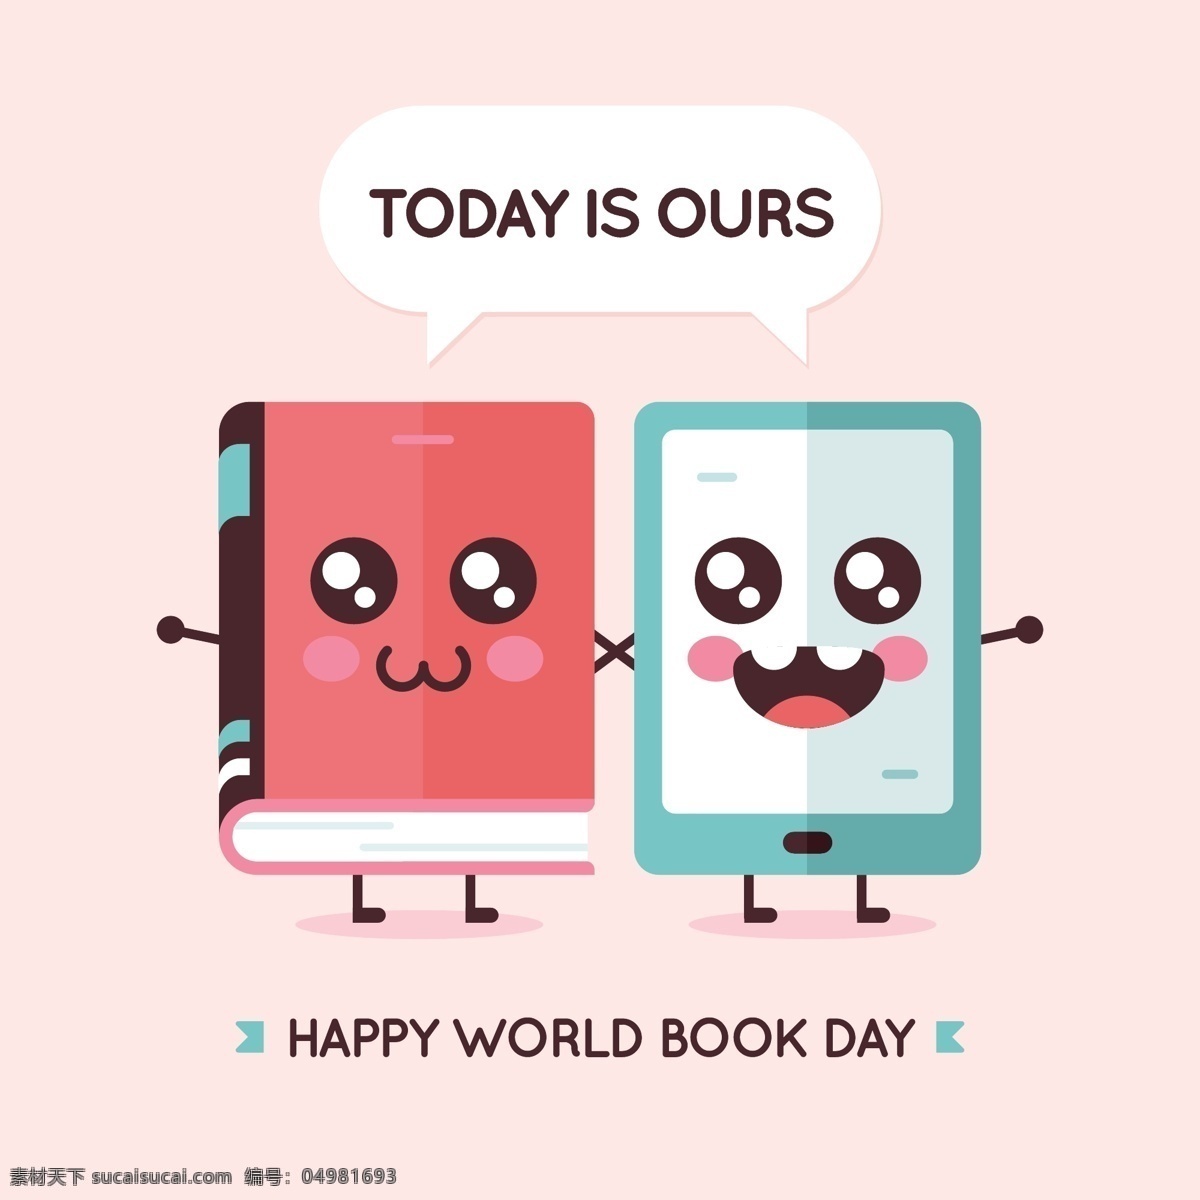 清新 可爱 表情 书本 世界 读书 日 节日 元素 粉色底纹 可爱表情 节日元素 平板 褐色英文 蓝色符号 世界读书日